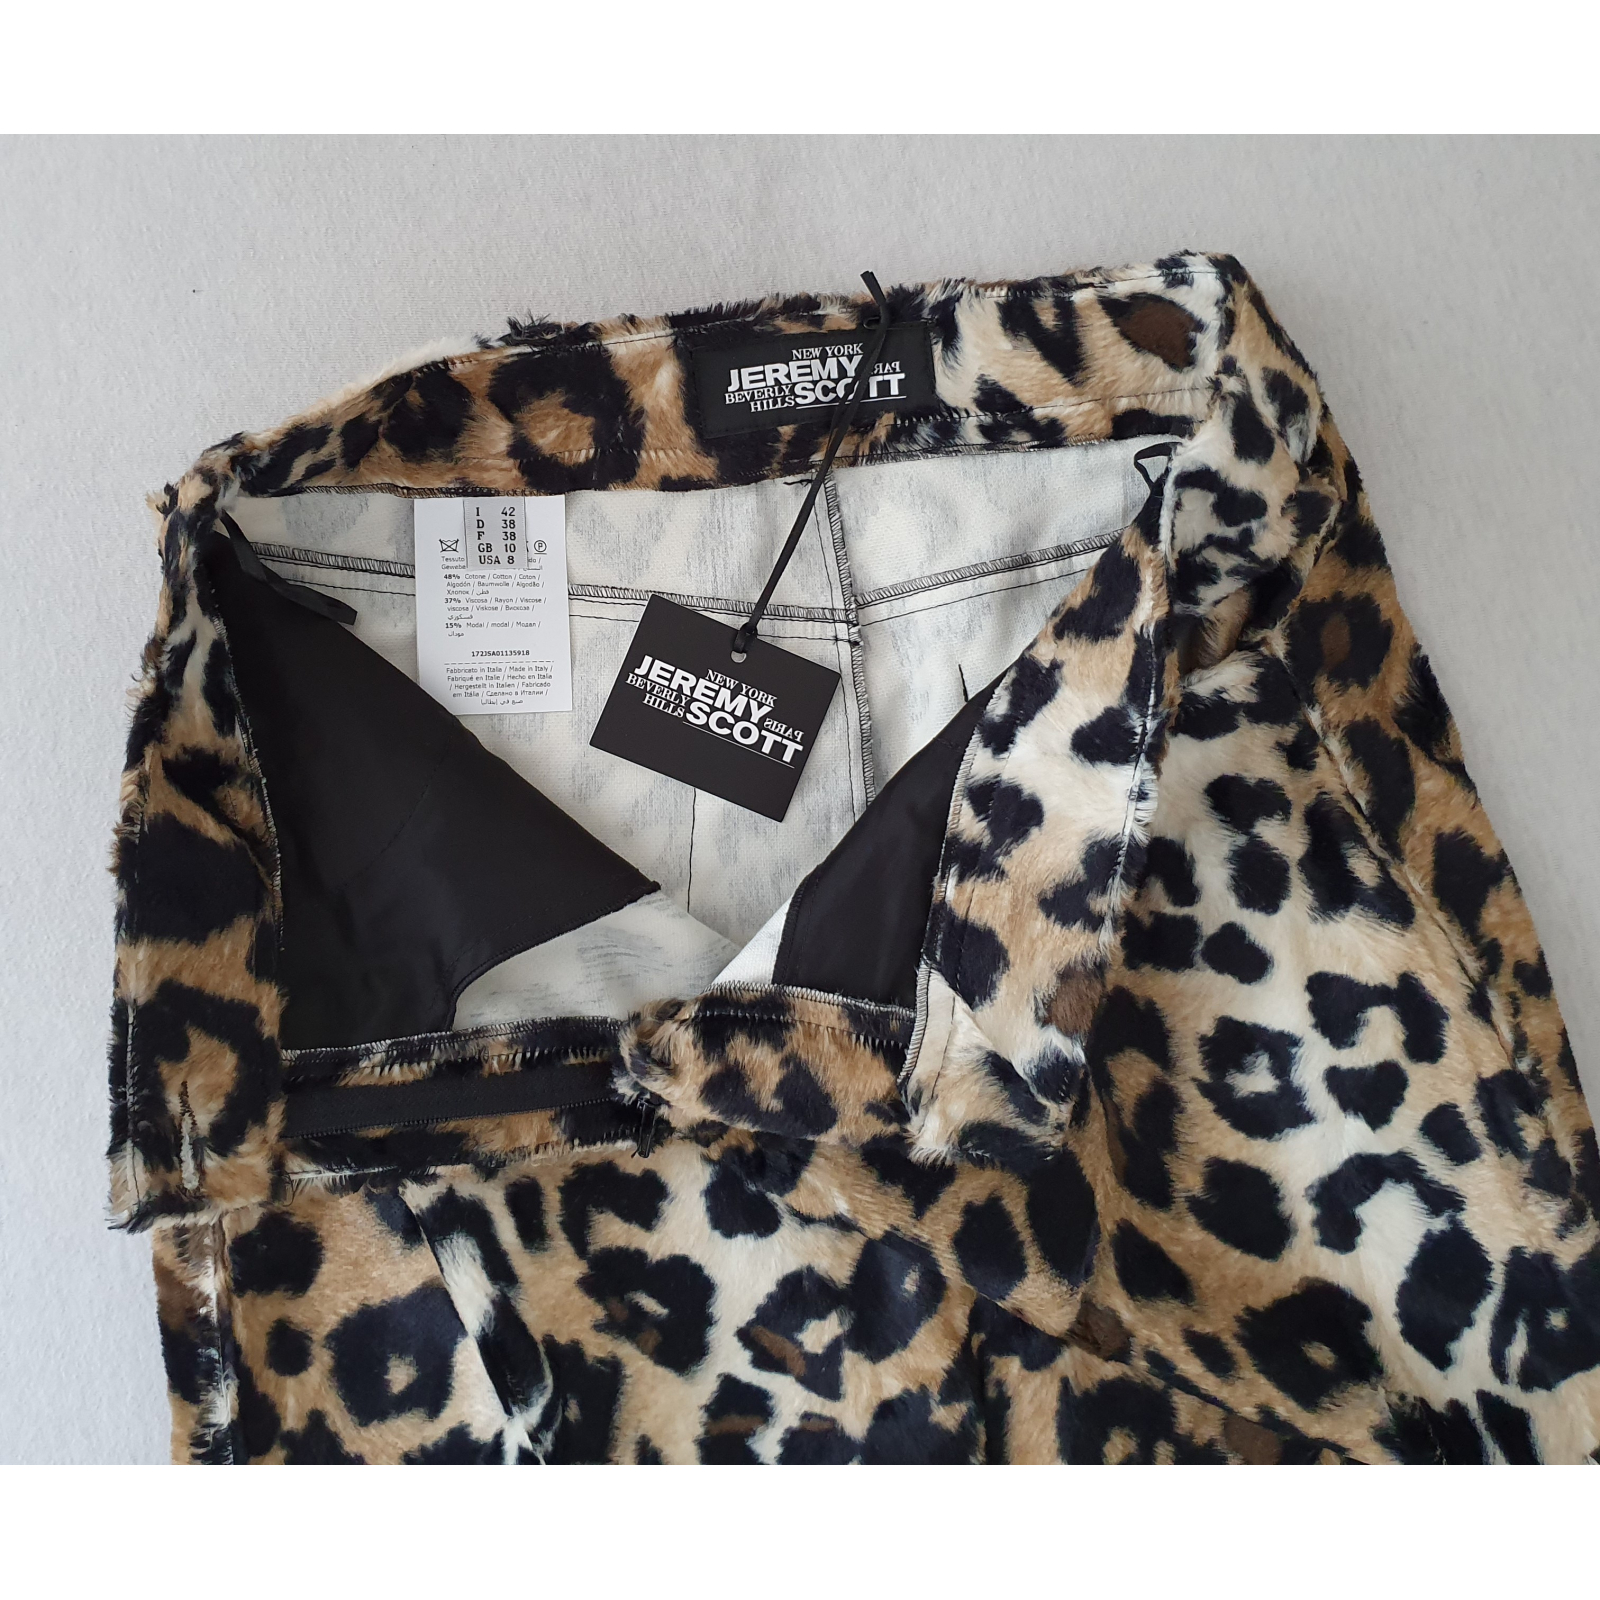 JEREMY SCOTT leopard pattern fitted skirt